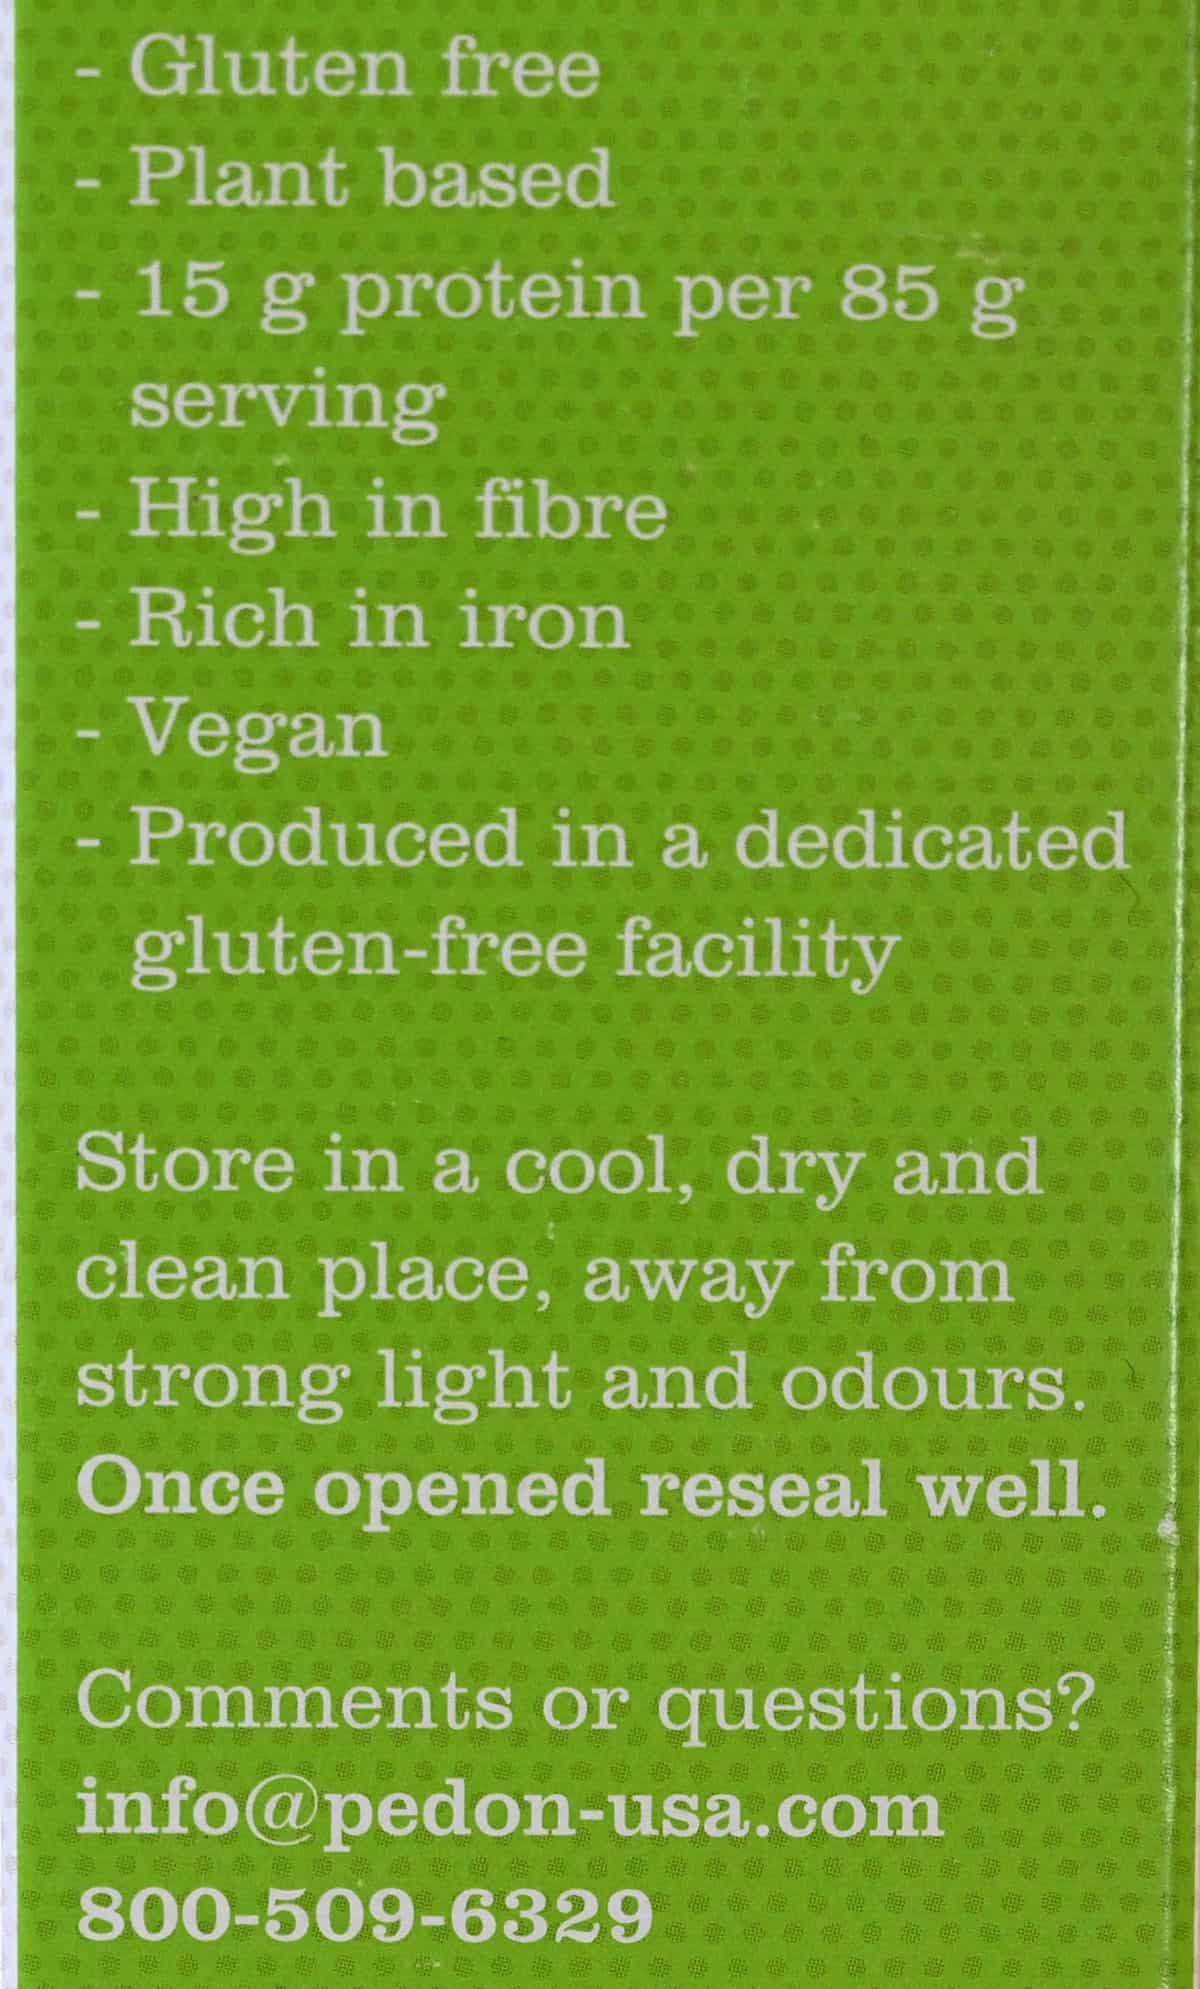 Pedon Four Bean Linguine product description from box. 